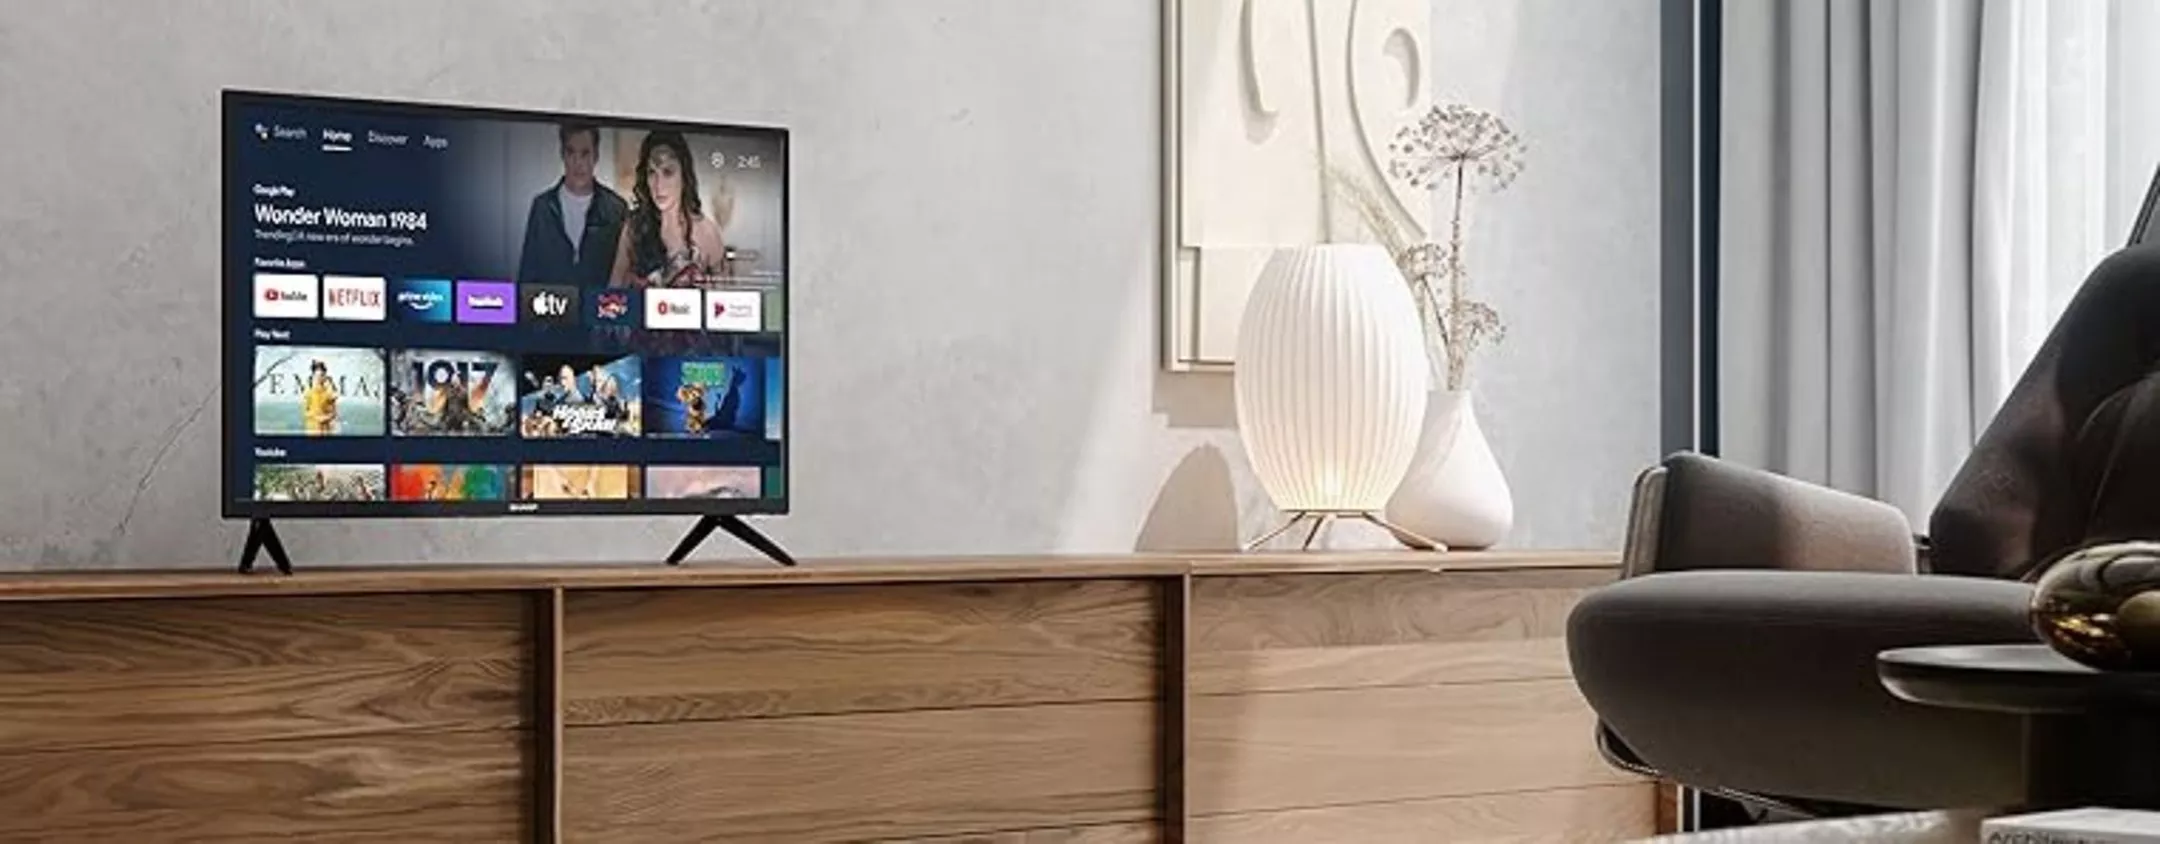 Smart TV Sharp Aquos da 40 pollici con ANDROID TV a soli 249€ su